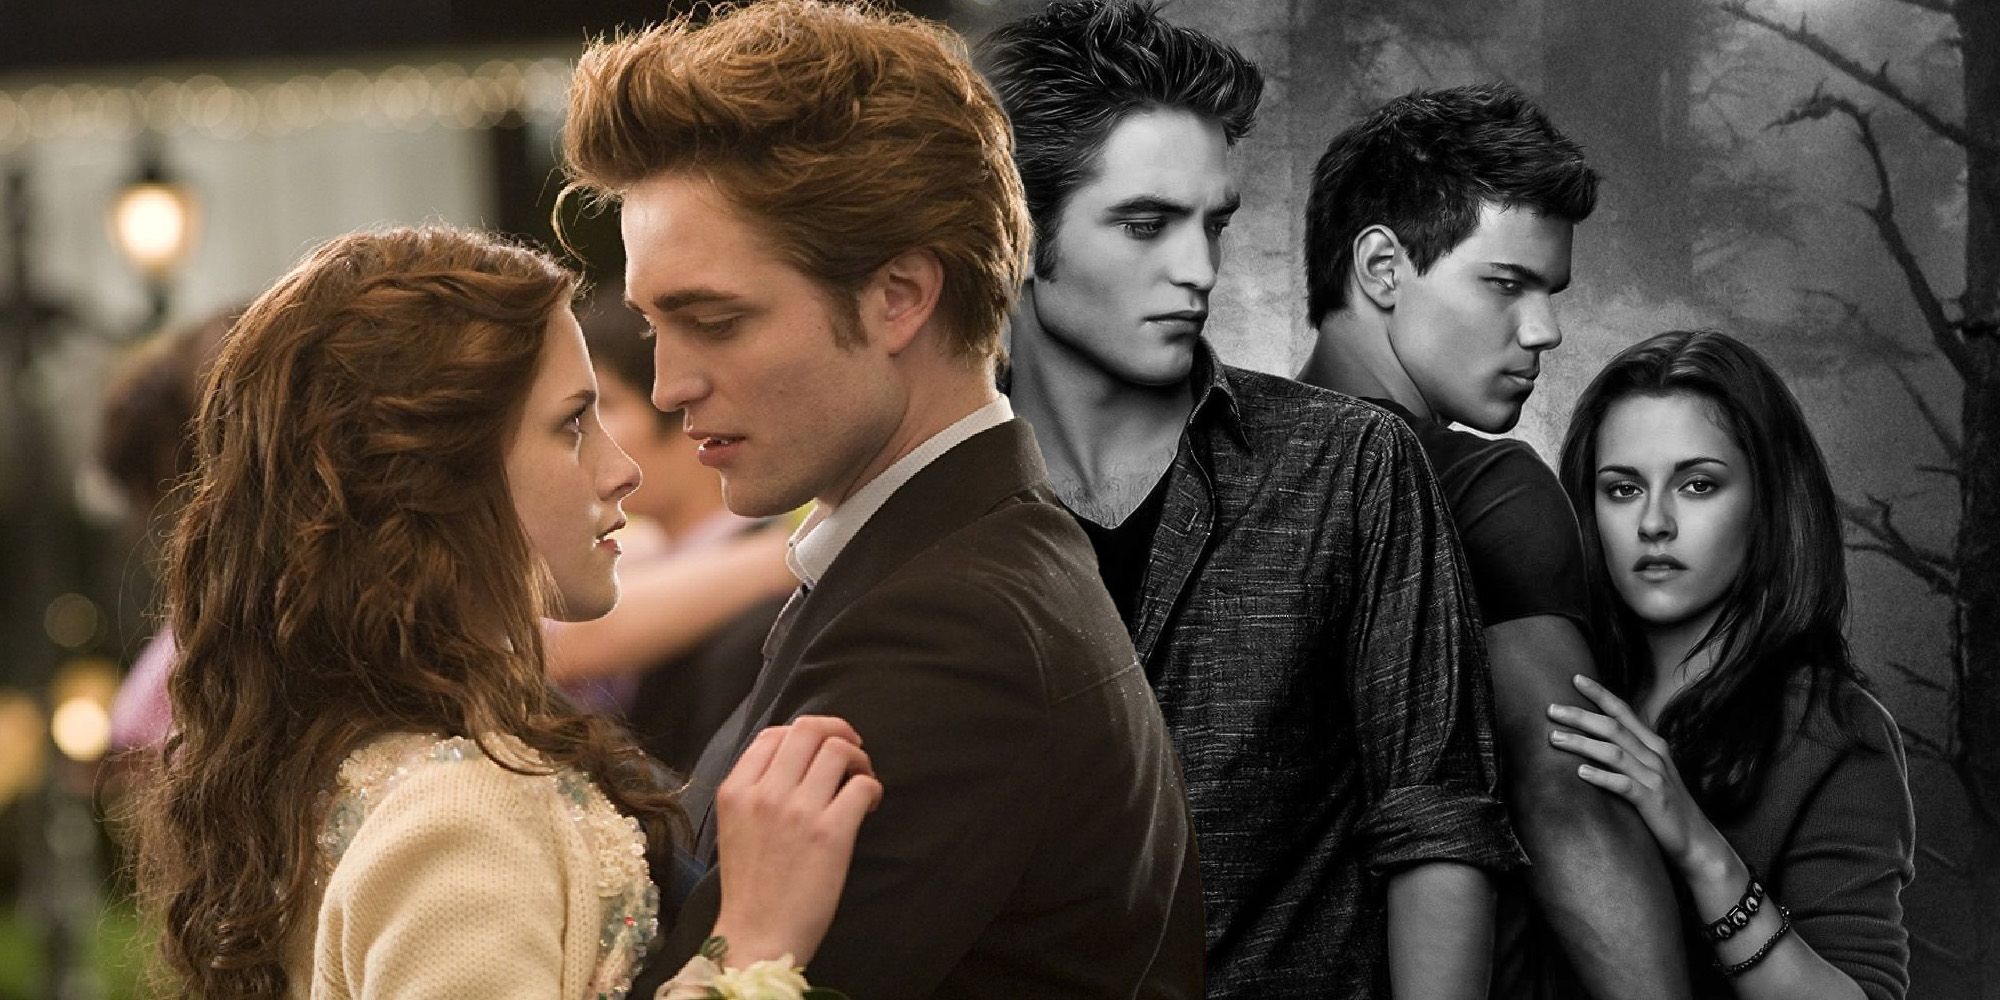 Robert Pattinson Taylor Lautner Kristen Stewart Twilight New Moon